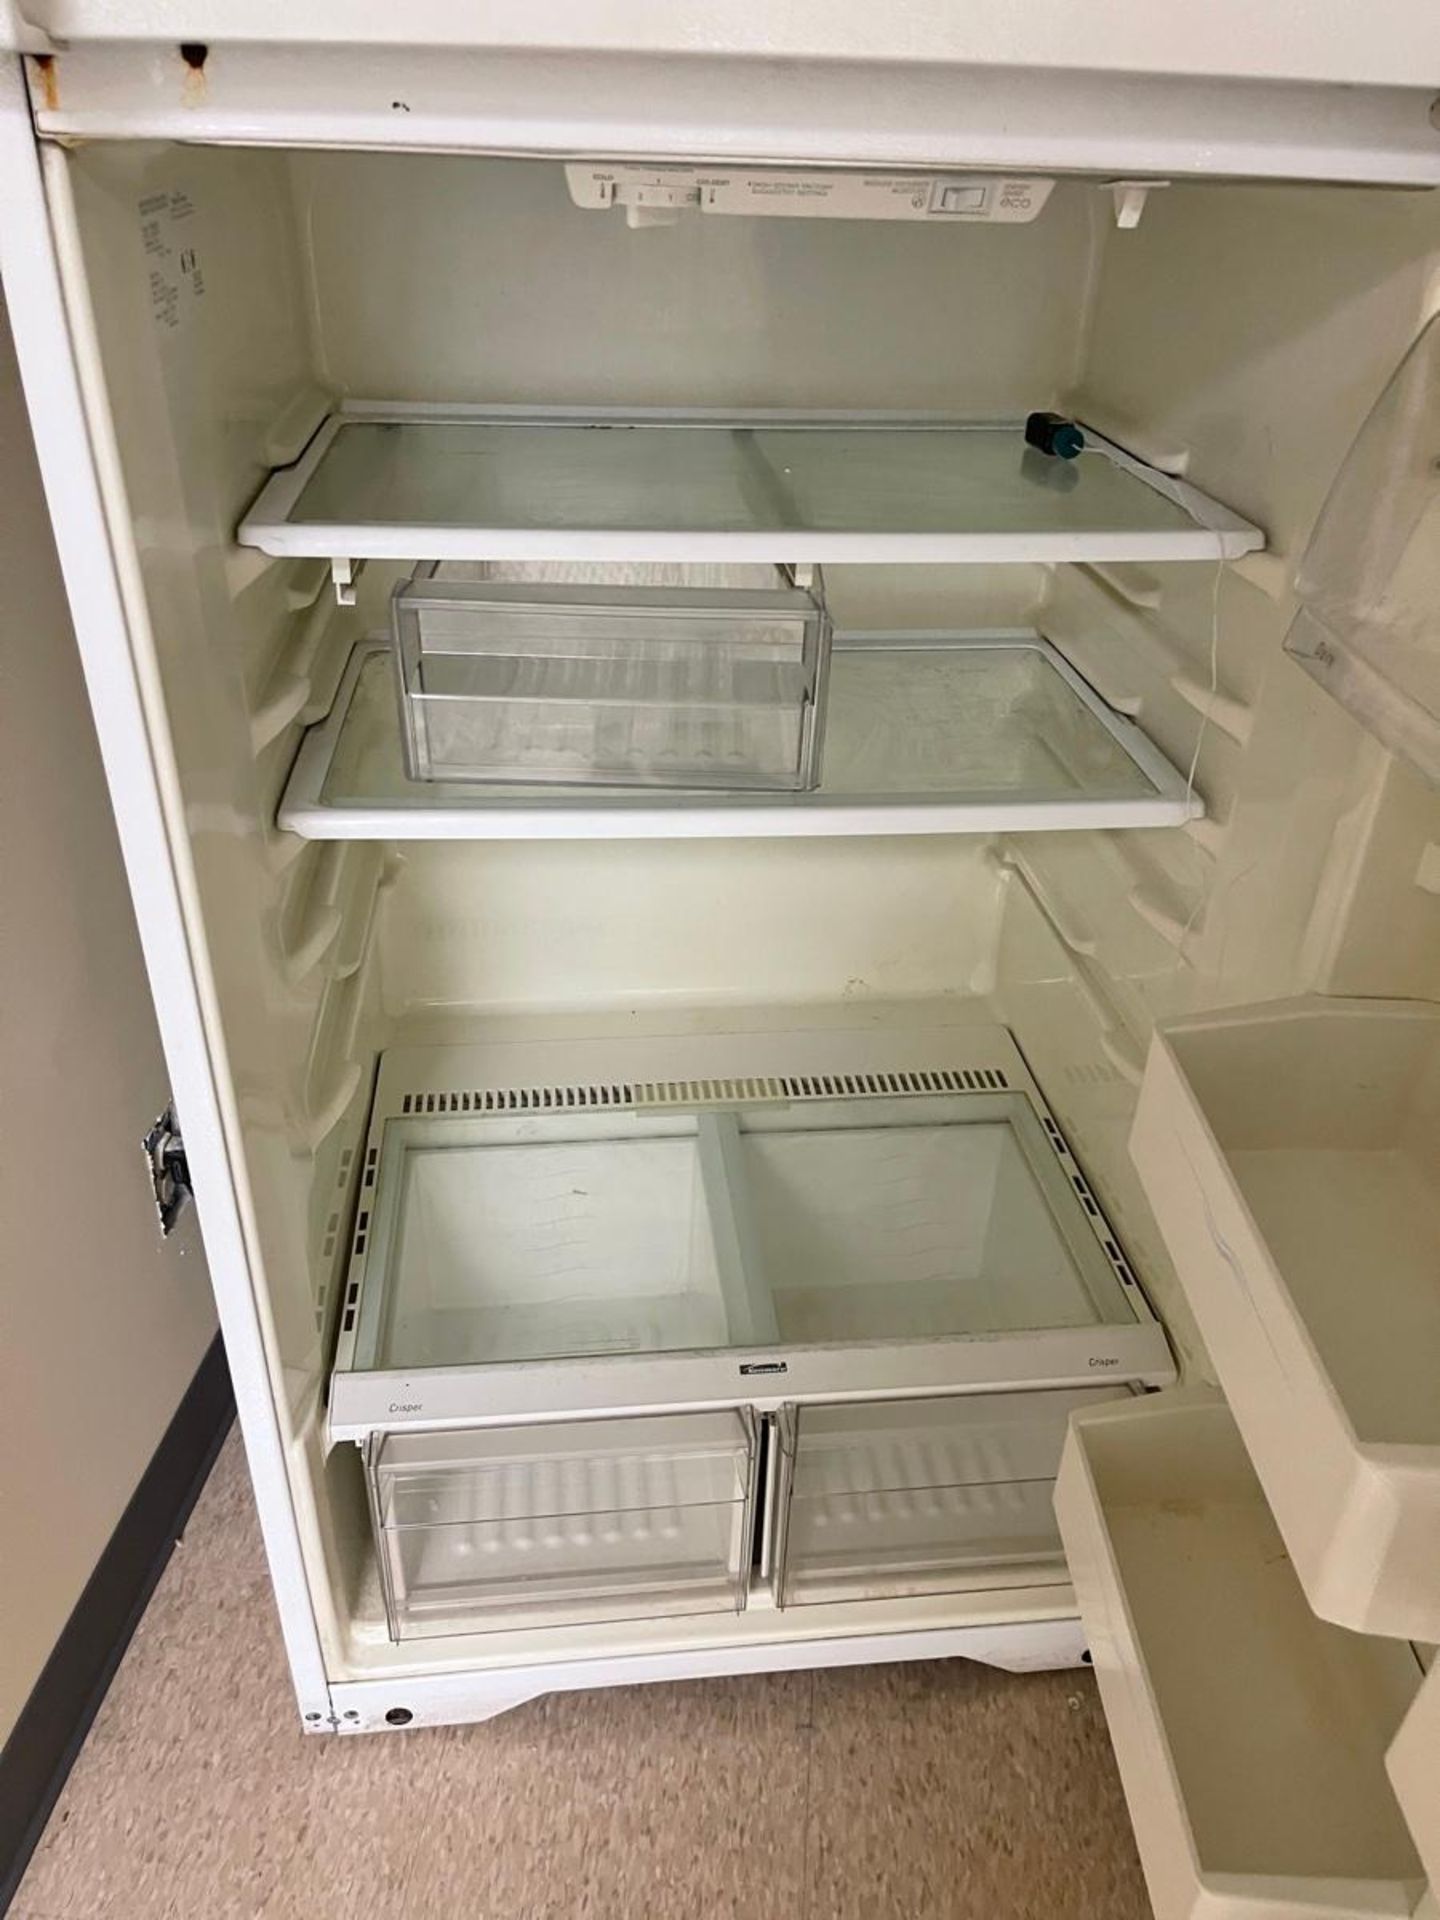 UL Refrigerator - Image 3 of 4